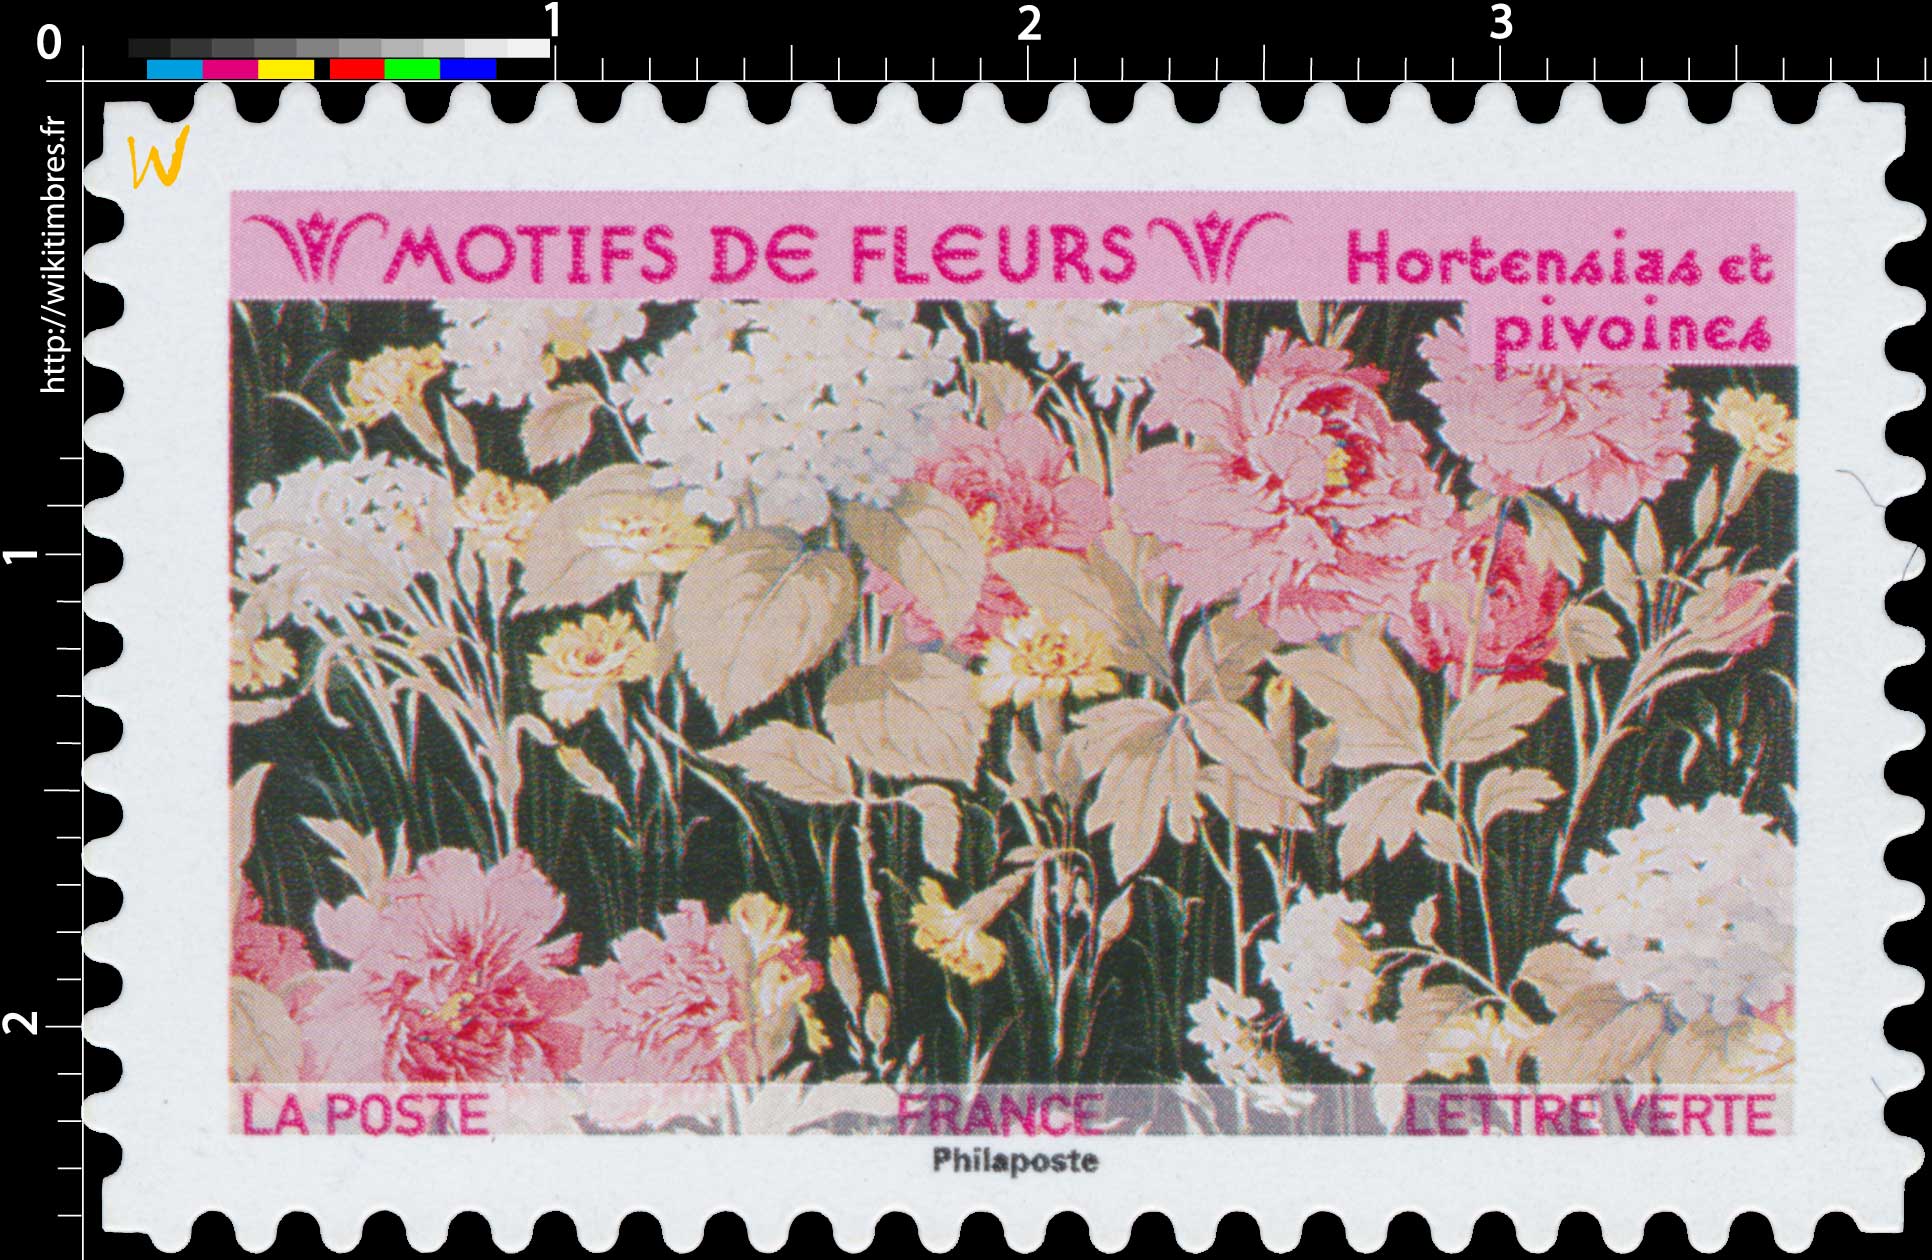 2021 Motifs de fleurs - Hortensias et pivoines